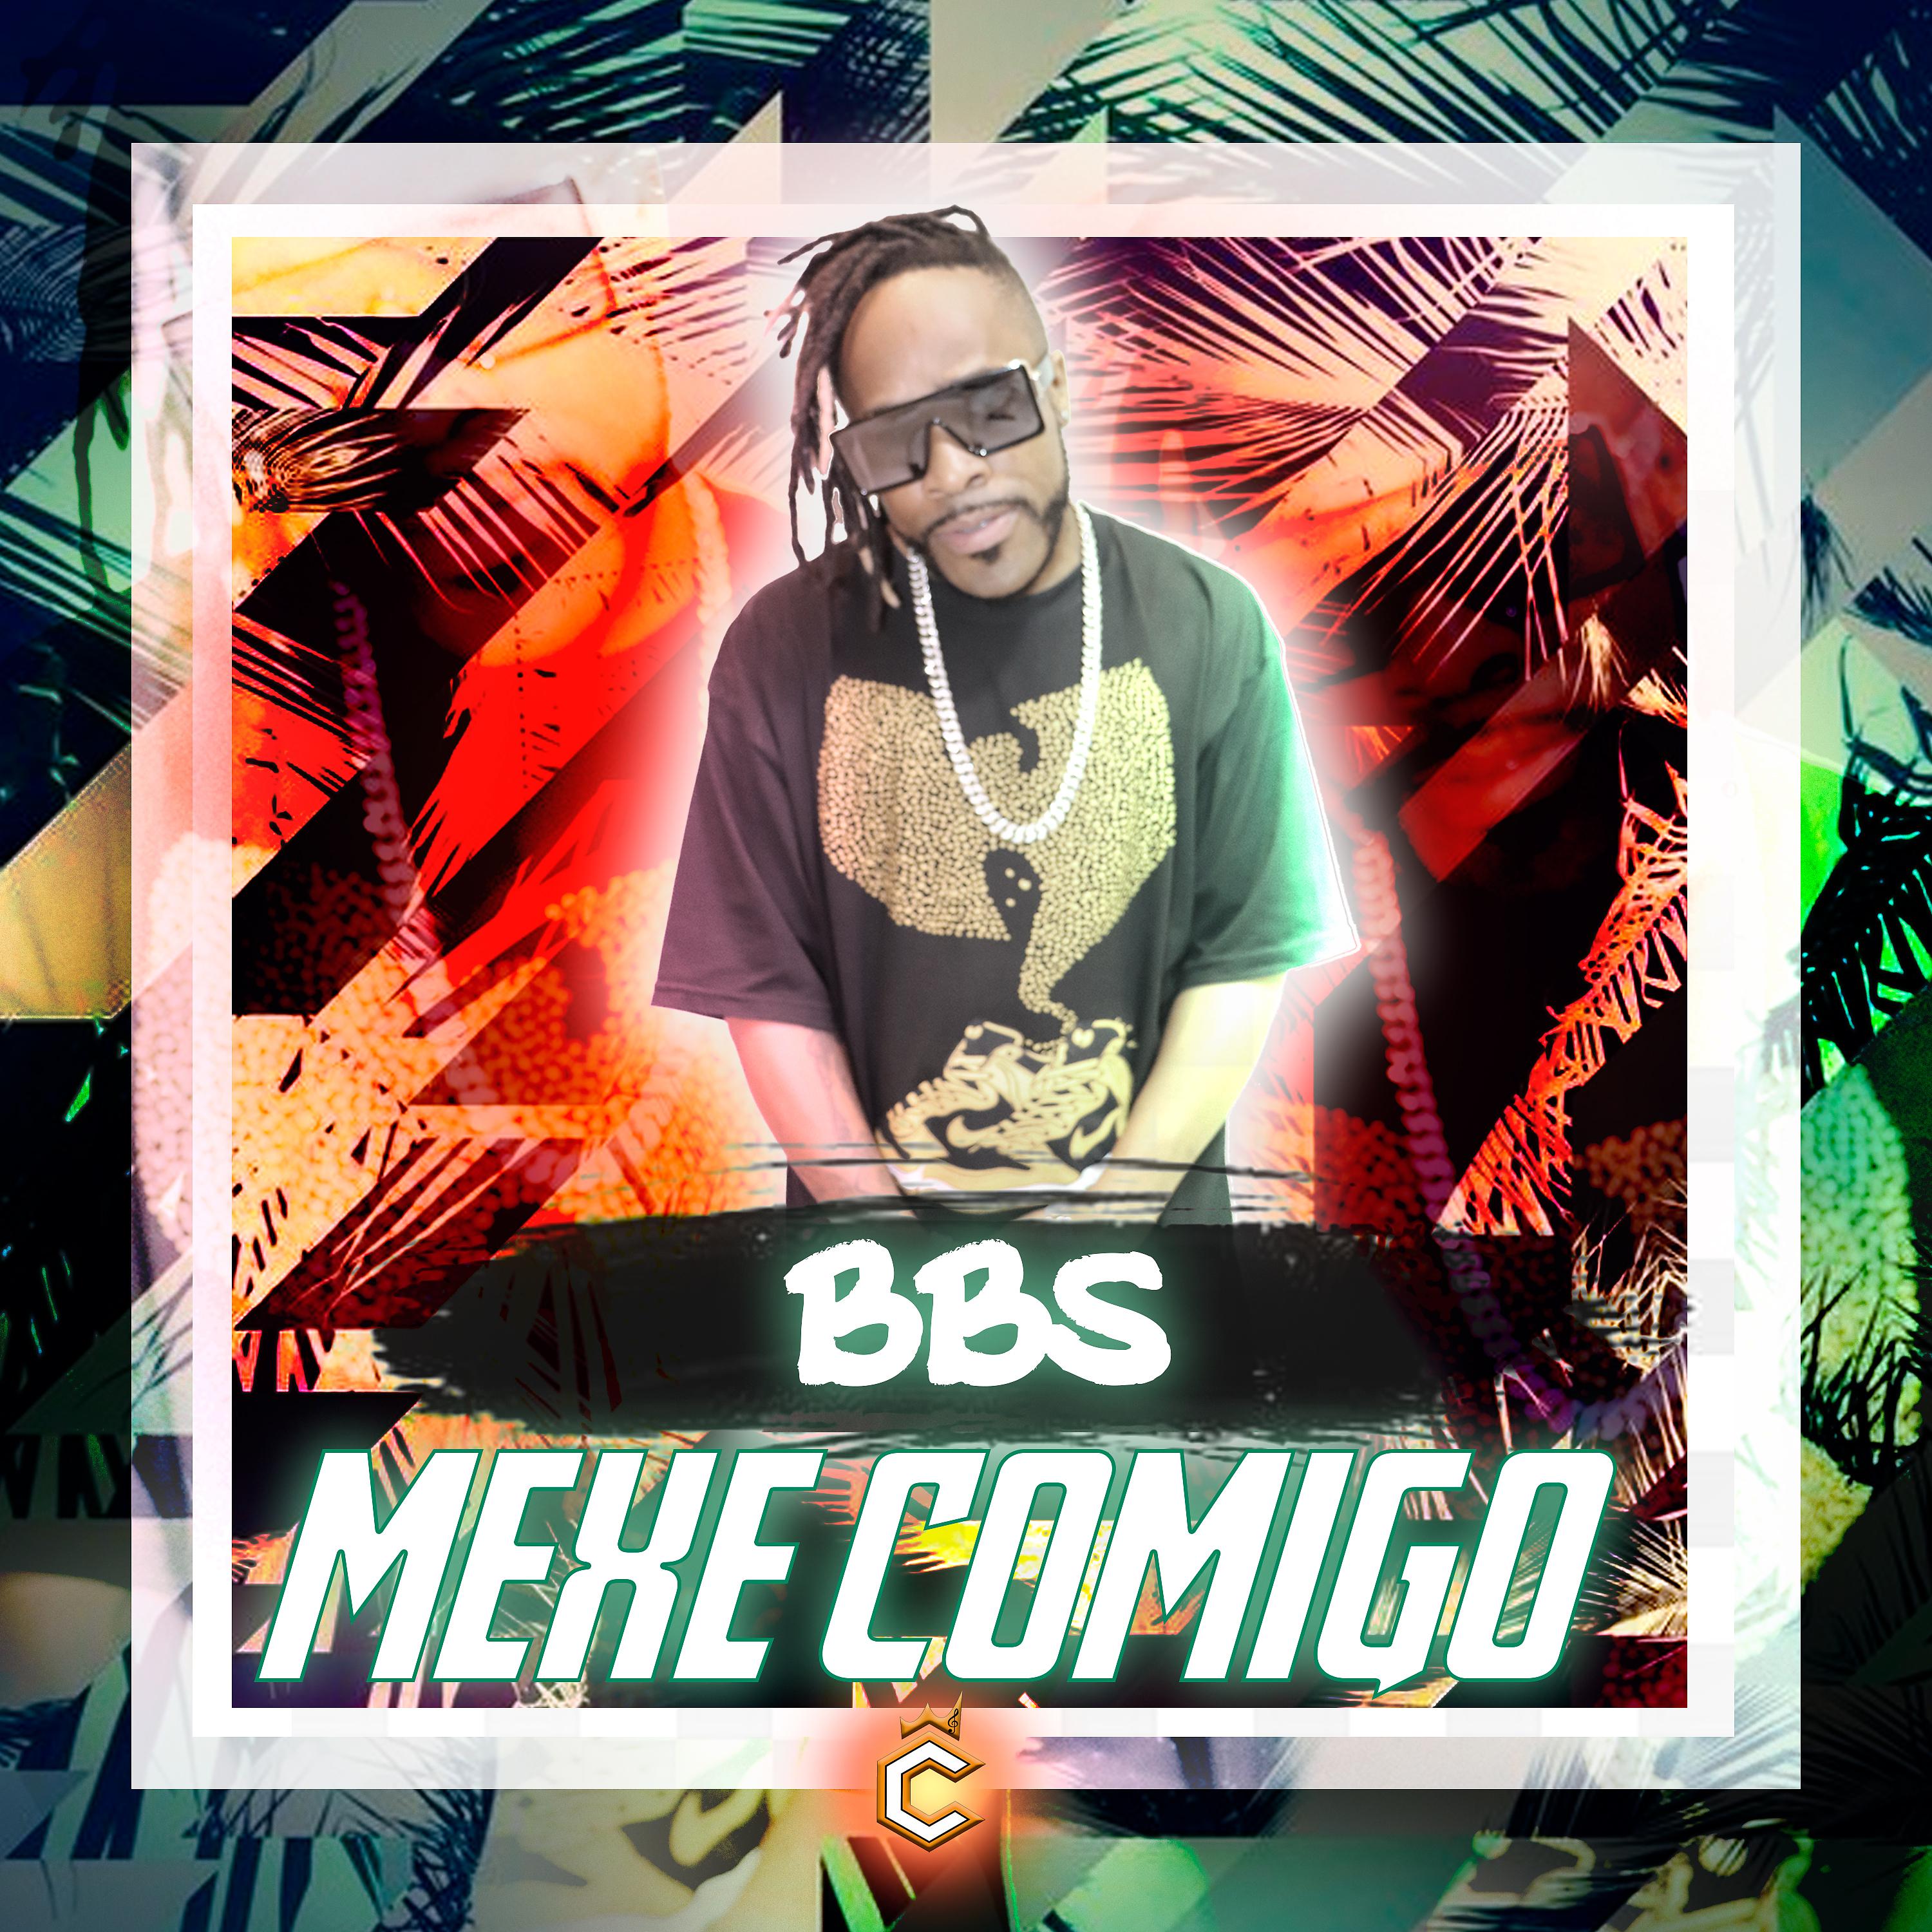 Постер альбома Mexe Comigo